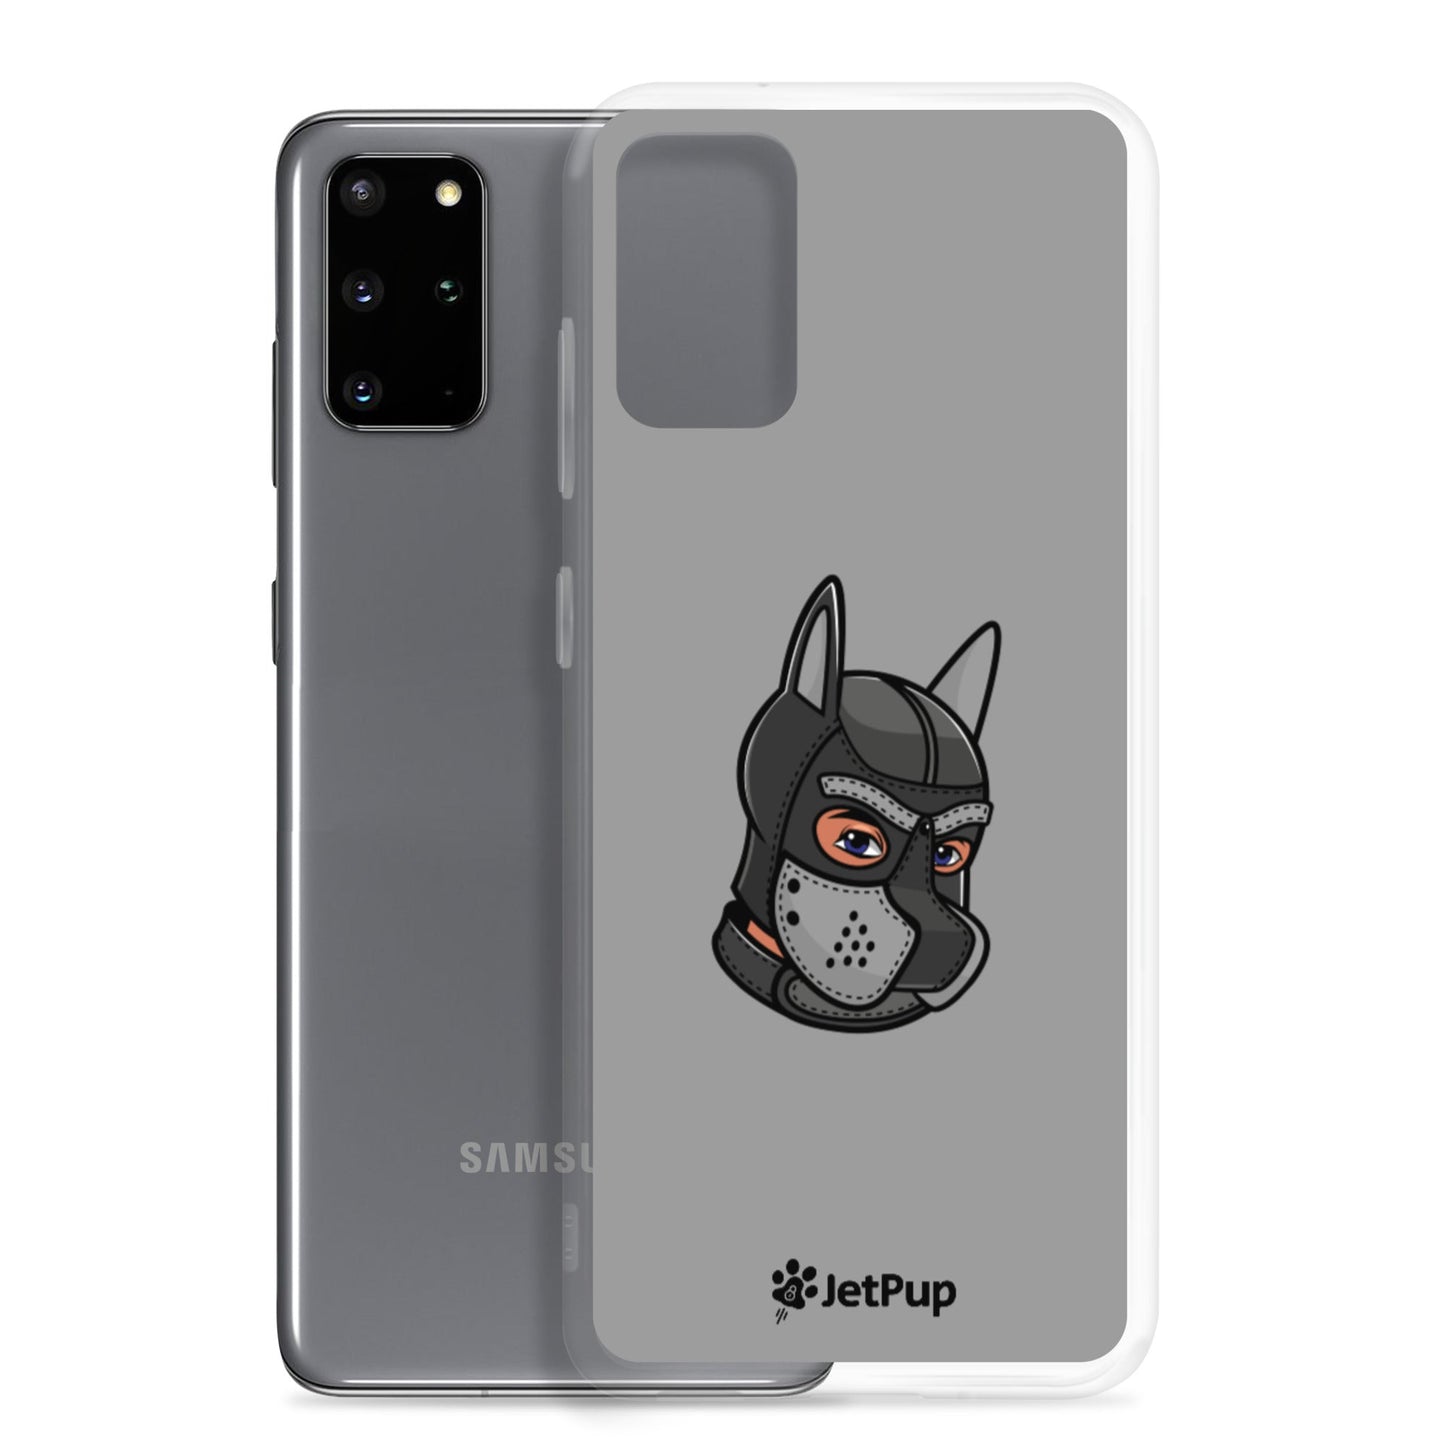 Pup Hood Samsung Case - Grey - JetPup